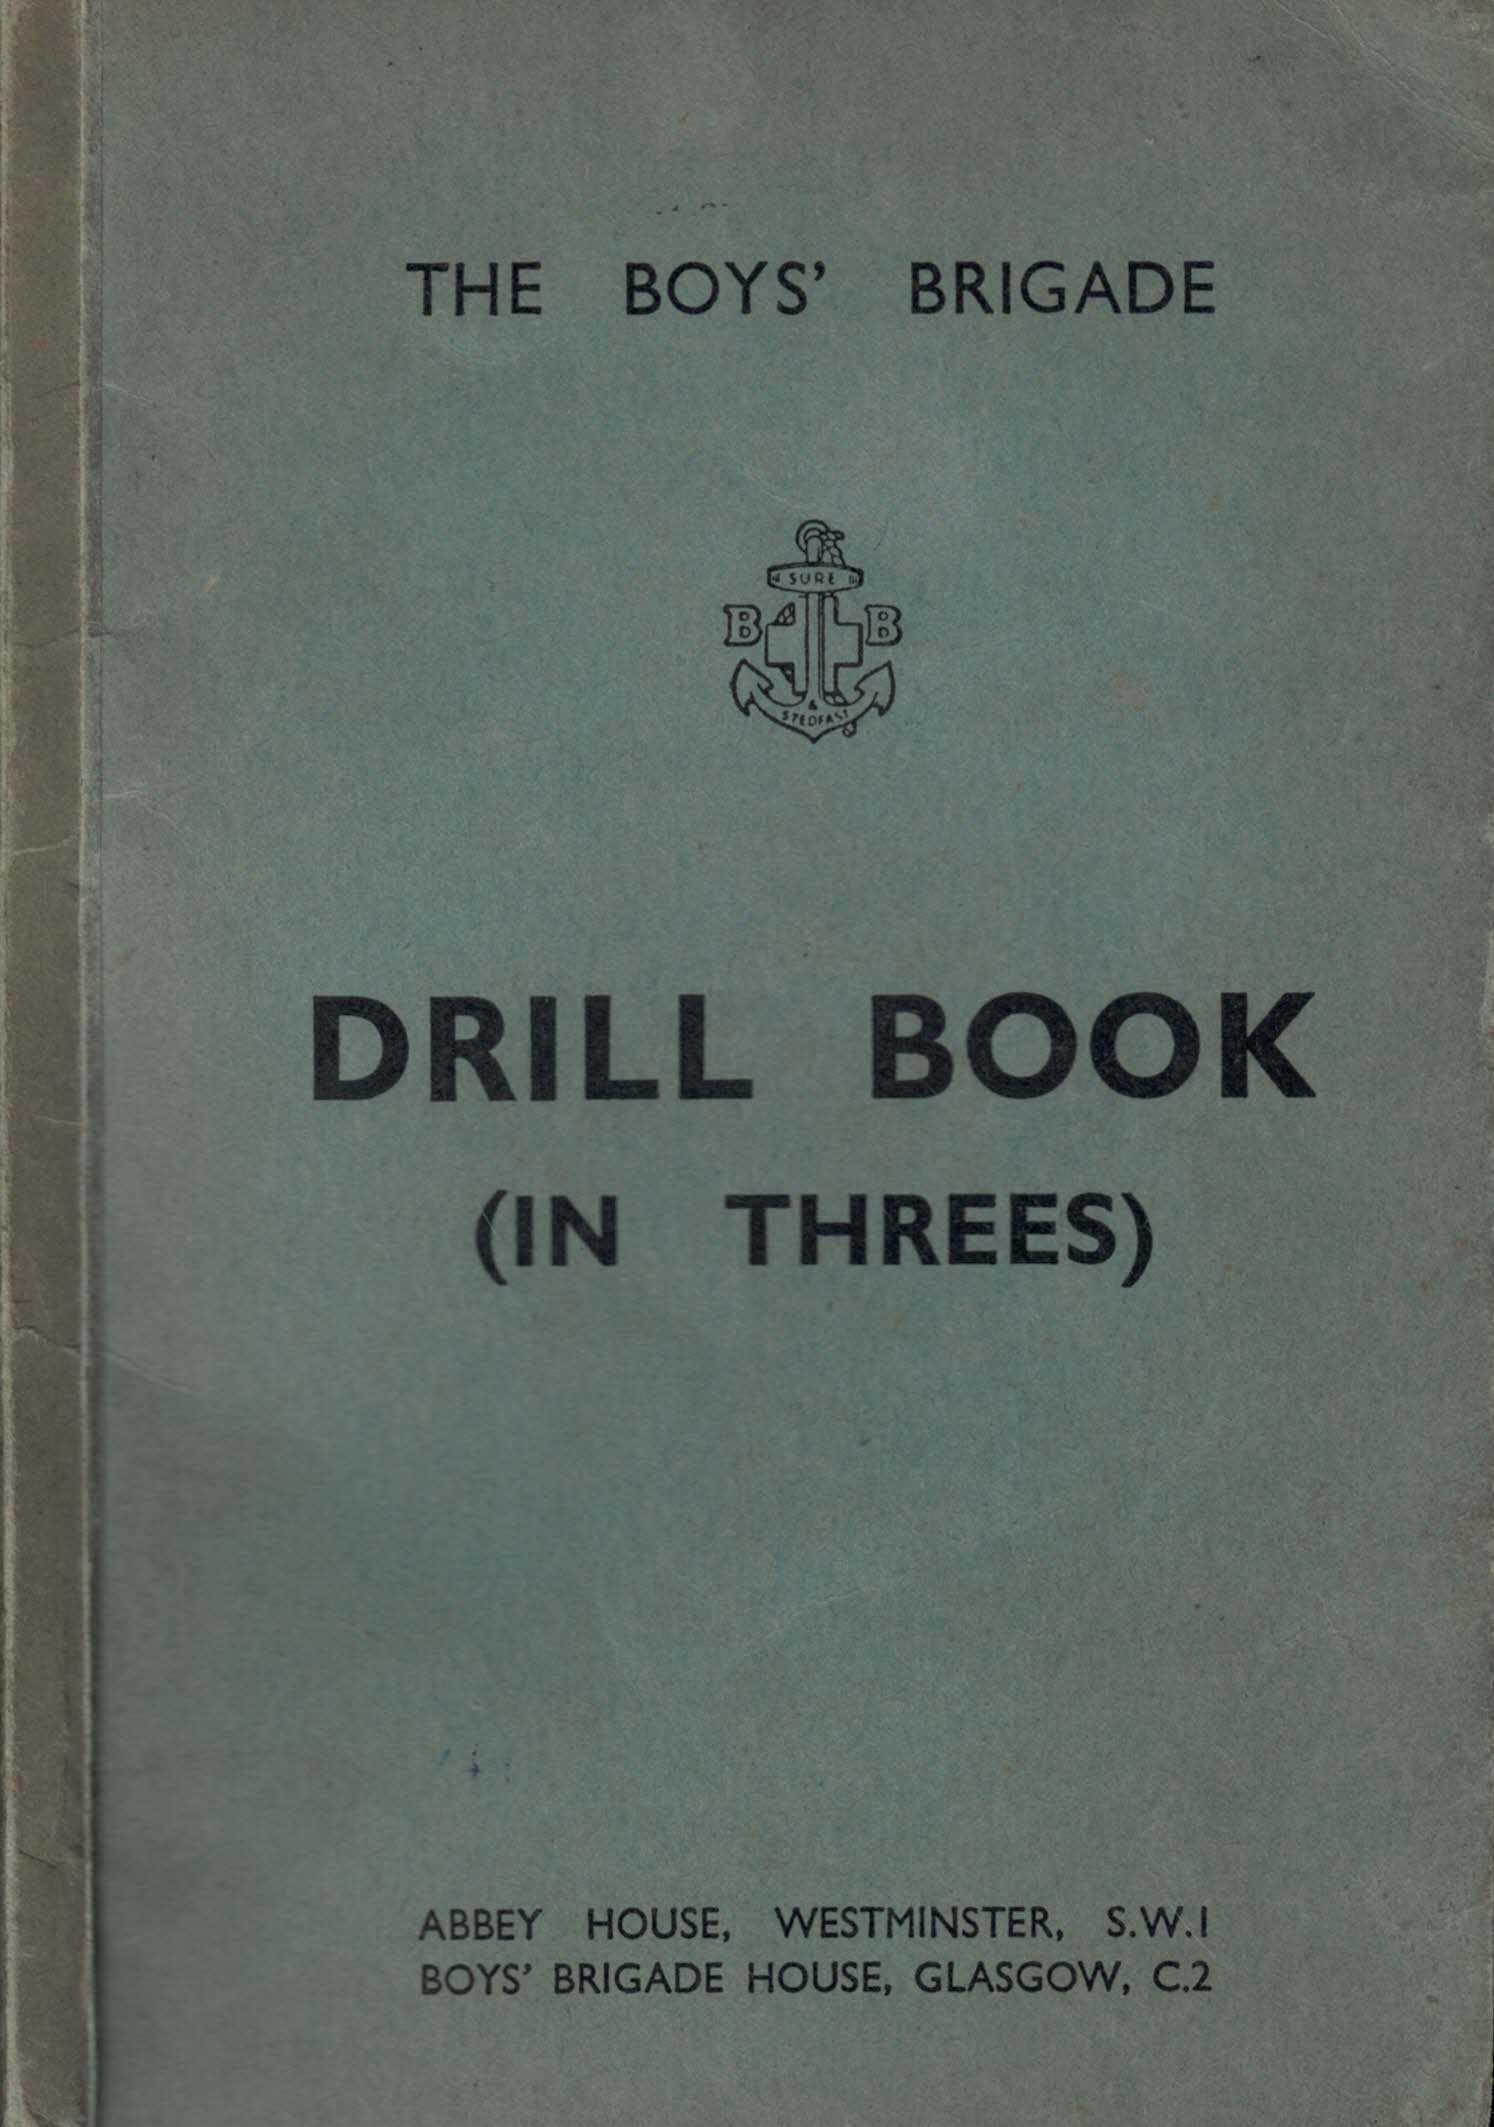 The Boys' Brigade Drill Book (in Threes)